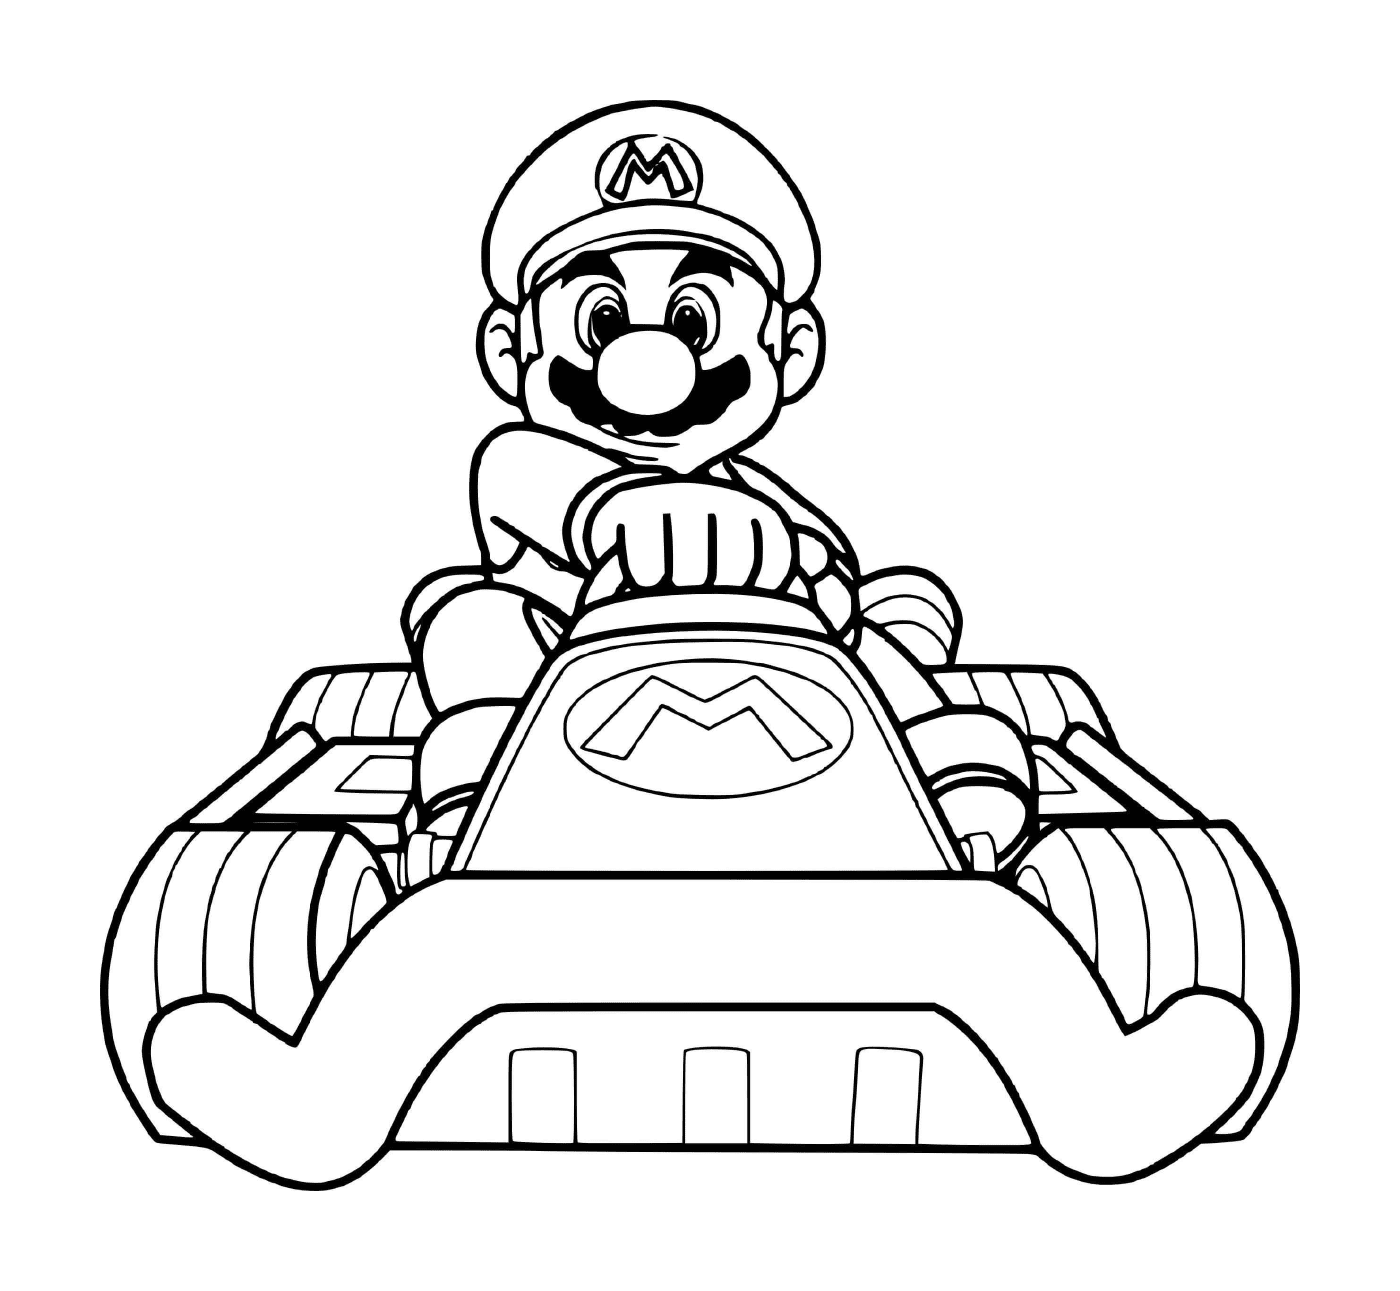  Mario pronto para a corrida de carros esportivos 